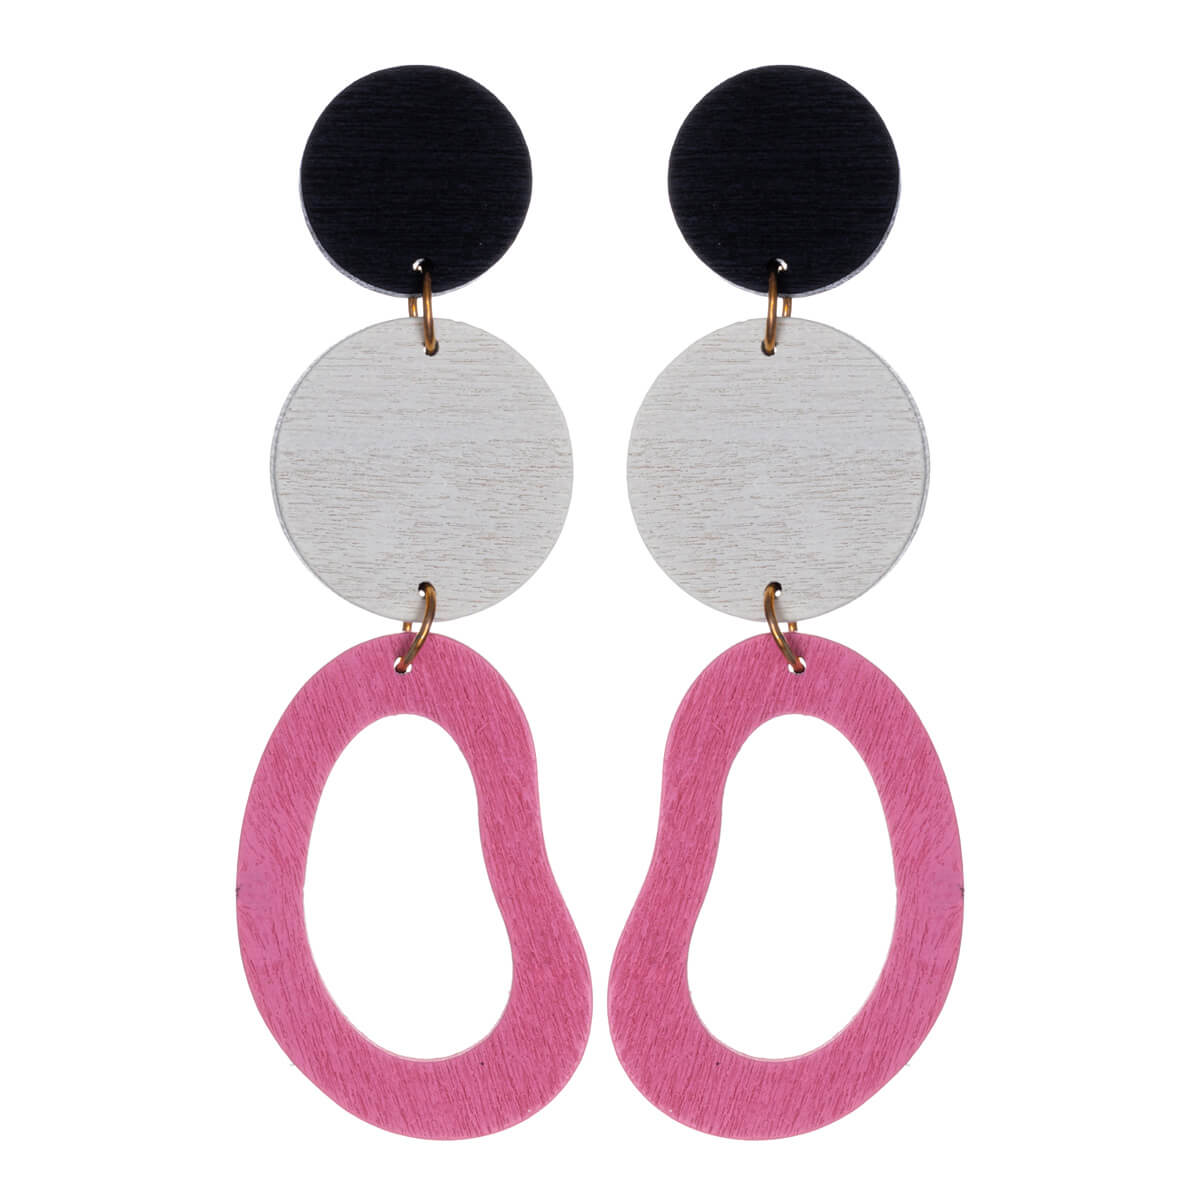 Wooden hanging earrings rings